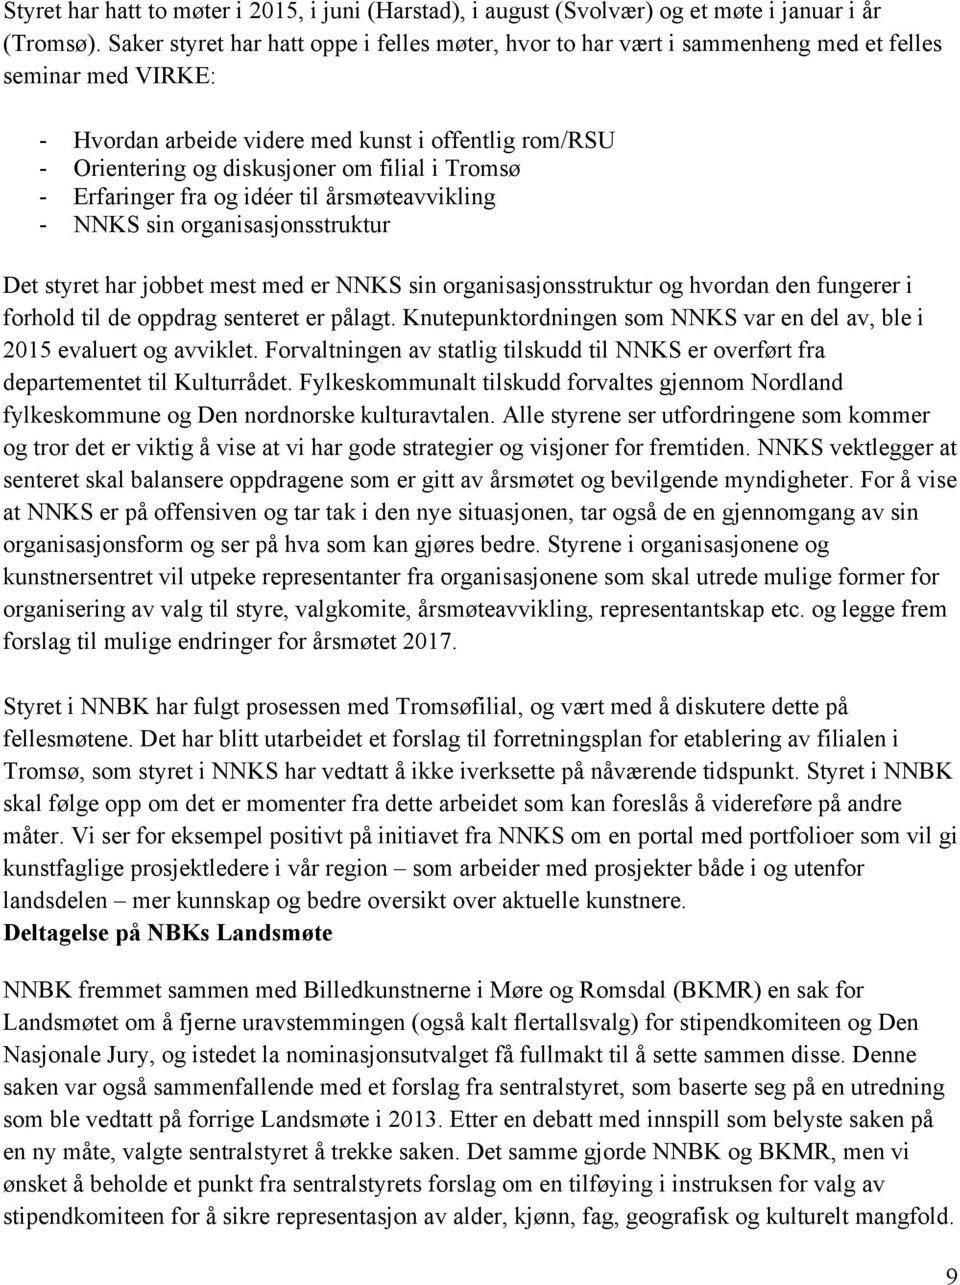 i Tromsø - Erfaringer fra og idéer til årsmøteavvikling - NNKS sin organisasjonsstruktur Det styret har jobbet mest med er NNKS sin organisasjonsstruktur og hvordan den fungerer i forhold til de